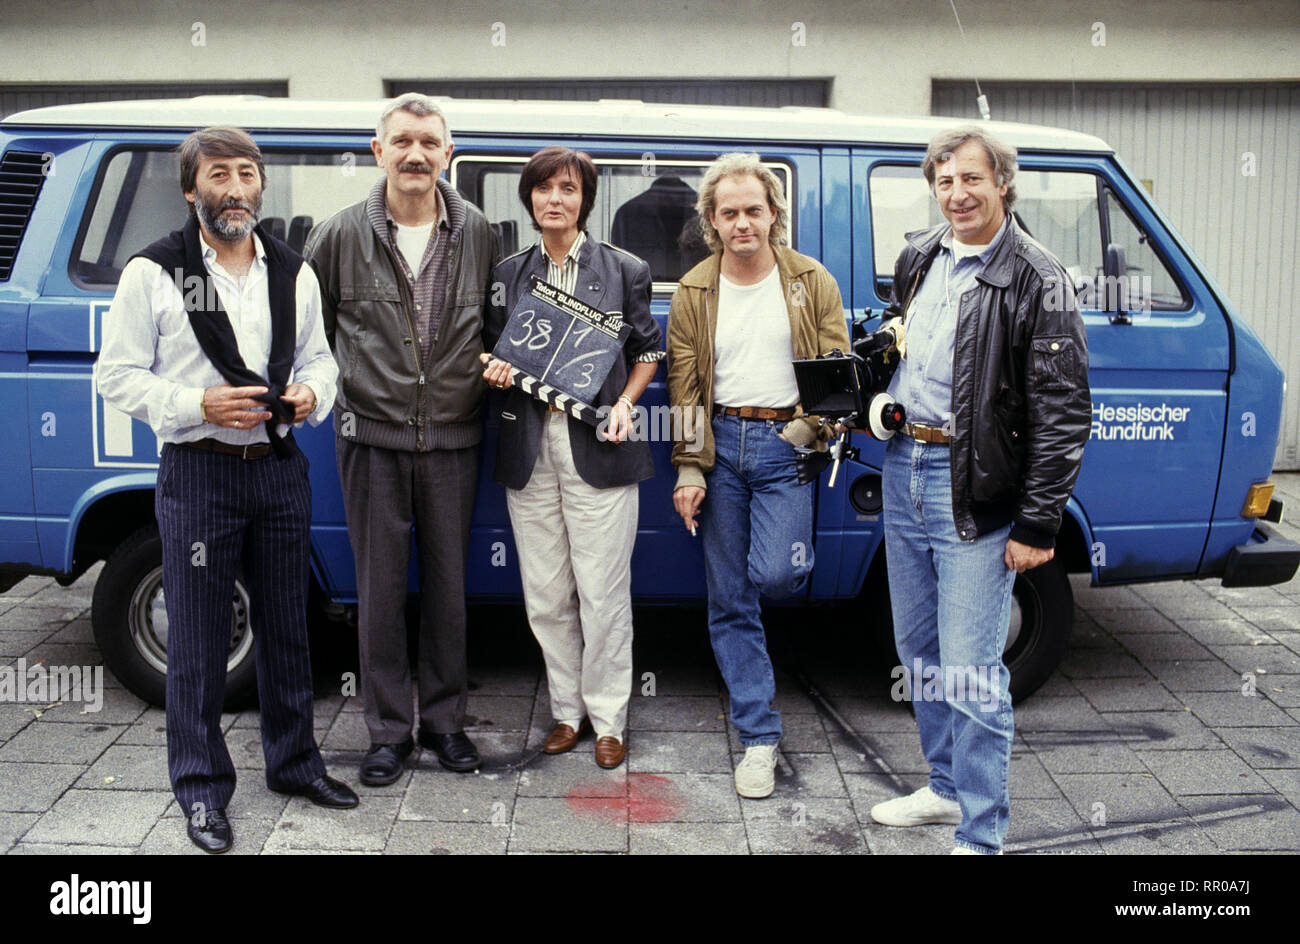 TATORT / Blindflug BRD 1987 / Sylvia Hoffman AURELIO FERRARA, KARL-HEINZ VON HASSEL, SYLVIA HOFFMAN (Regie), UWE OCHSENKNECHT, WERNER HOFFMANN, 'Tatort', Folge: Blindflug, 1987 33053/# / Überschrift: TATORT / BRD 1987 Stock Photo